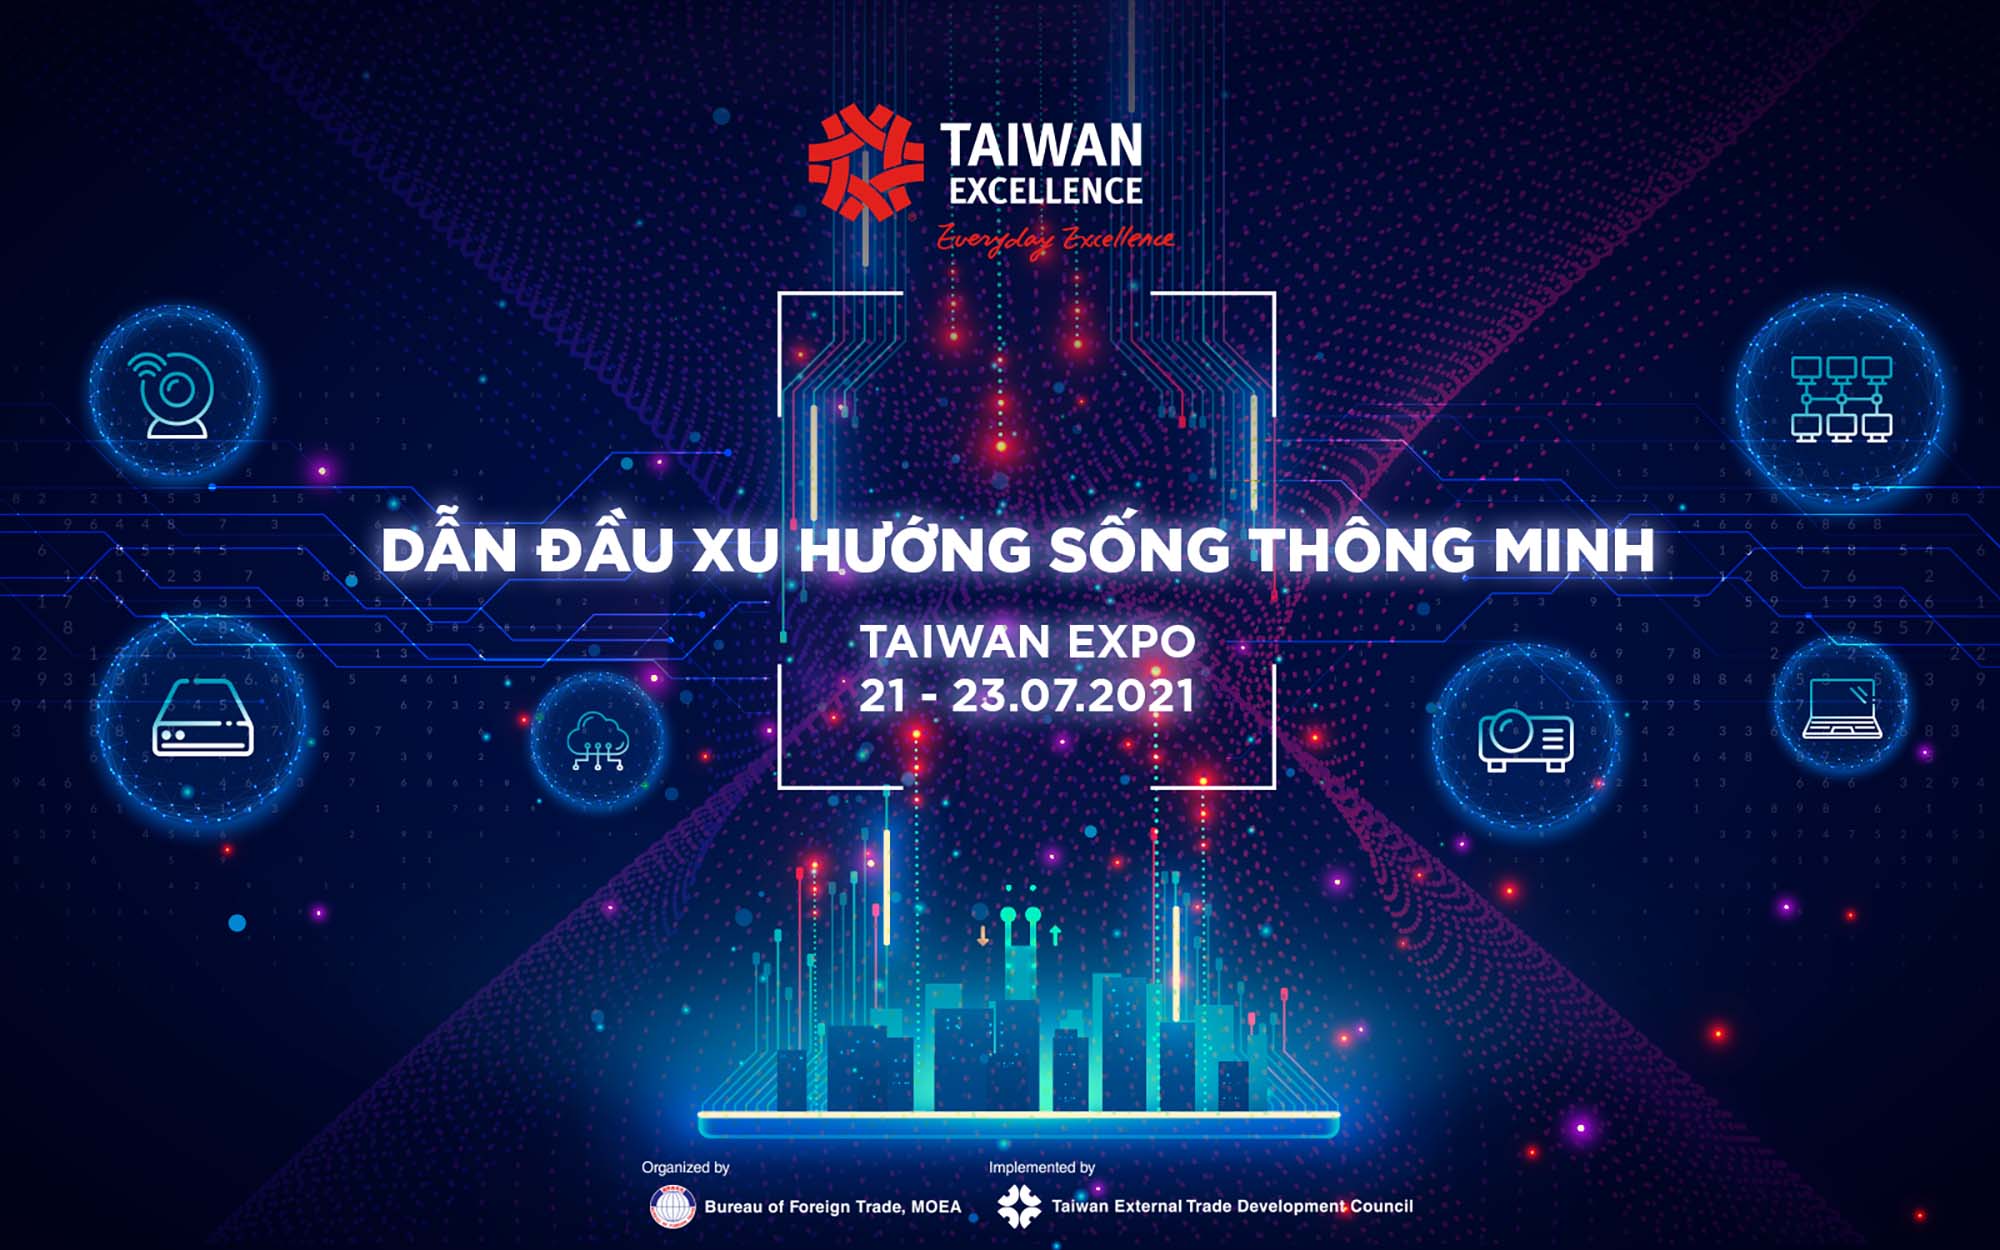 Trải nghiệm phong cách “Sống Thông Minh” cùng Taiwan Excellence tại triển lãm 3D trực tuyến Taiwan Expo Vietnam 2021